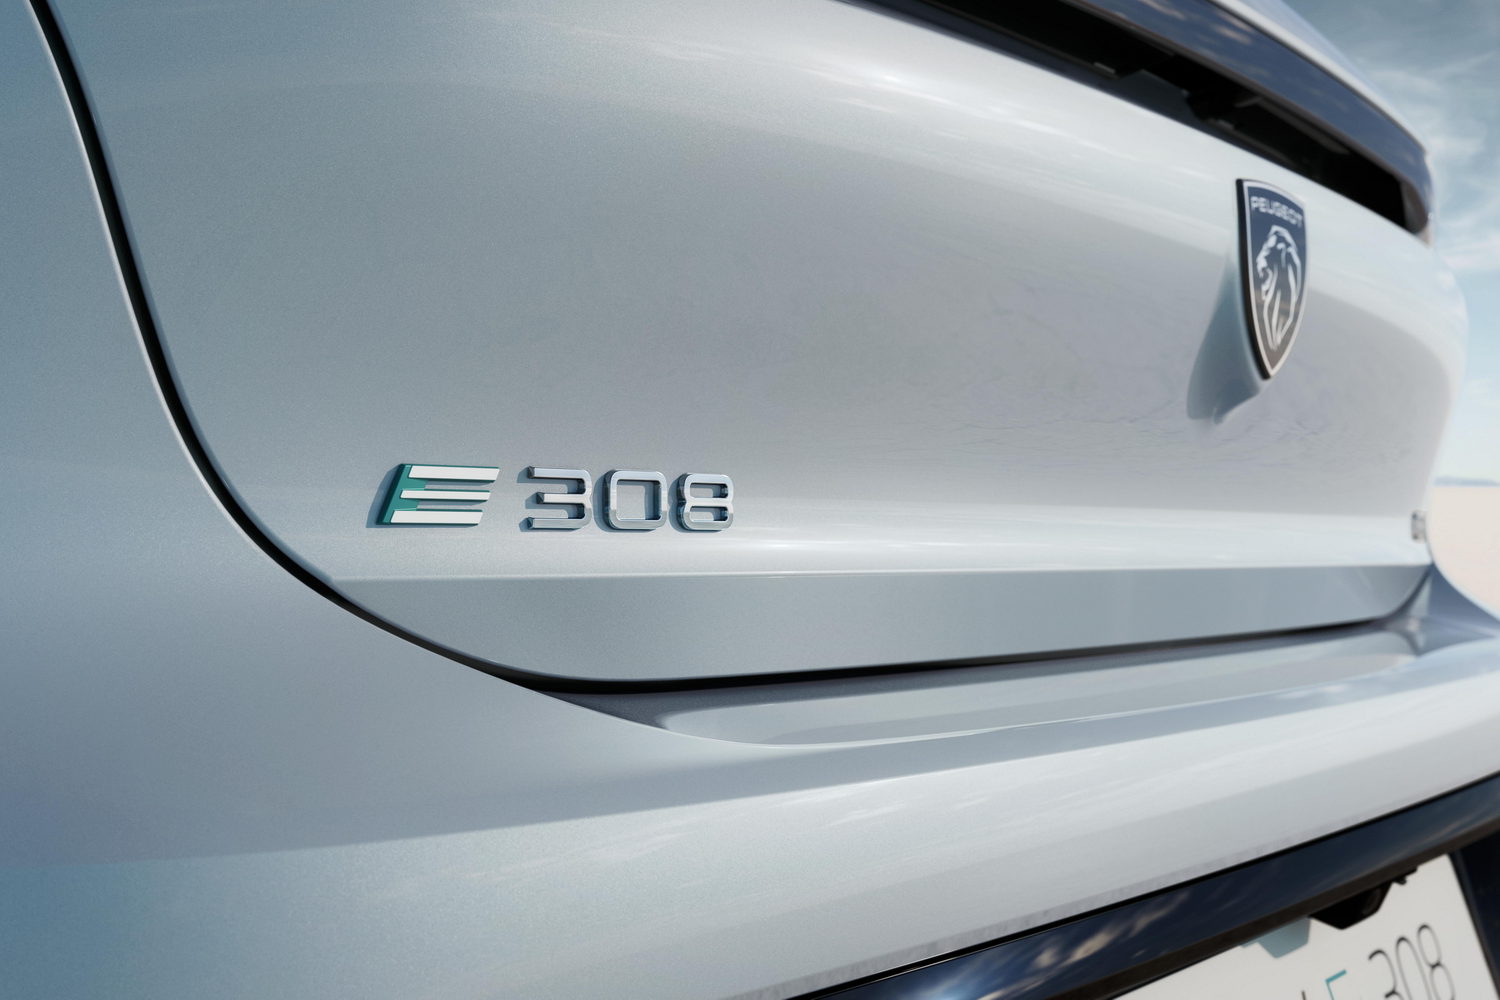 Electric Peugeot E-308 details out